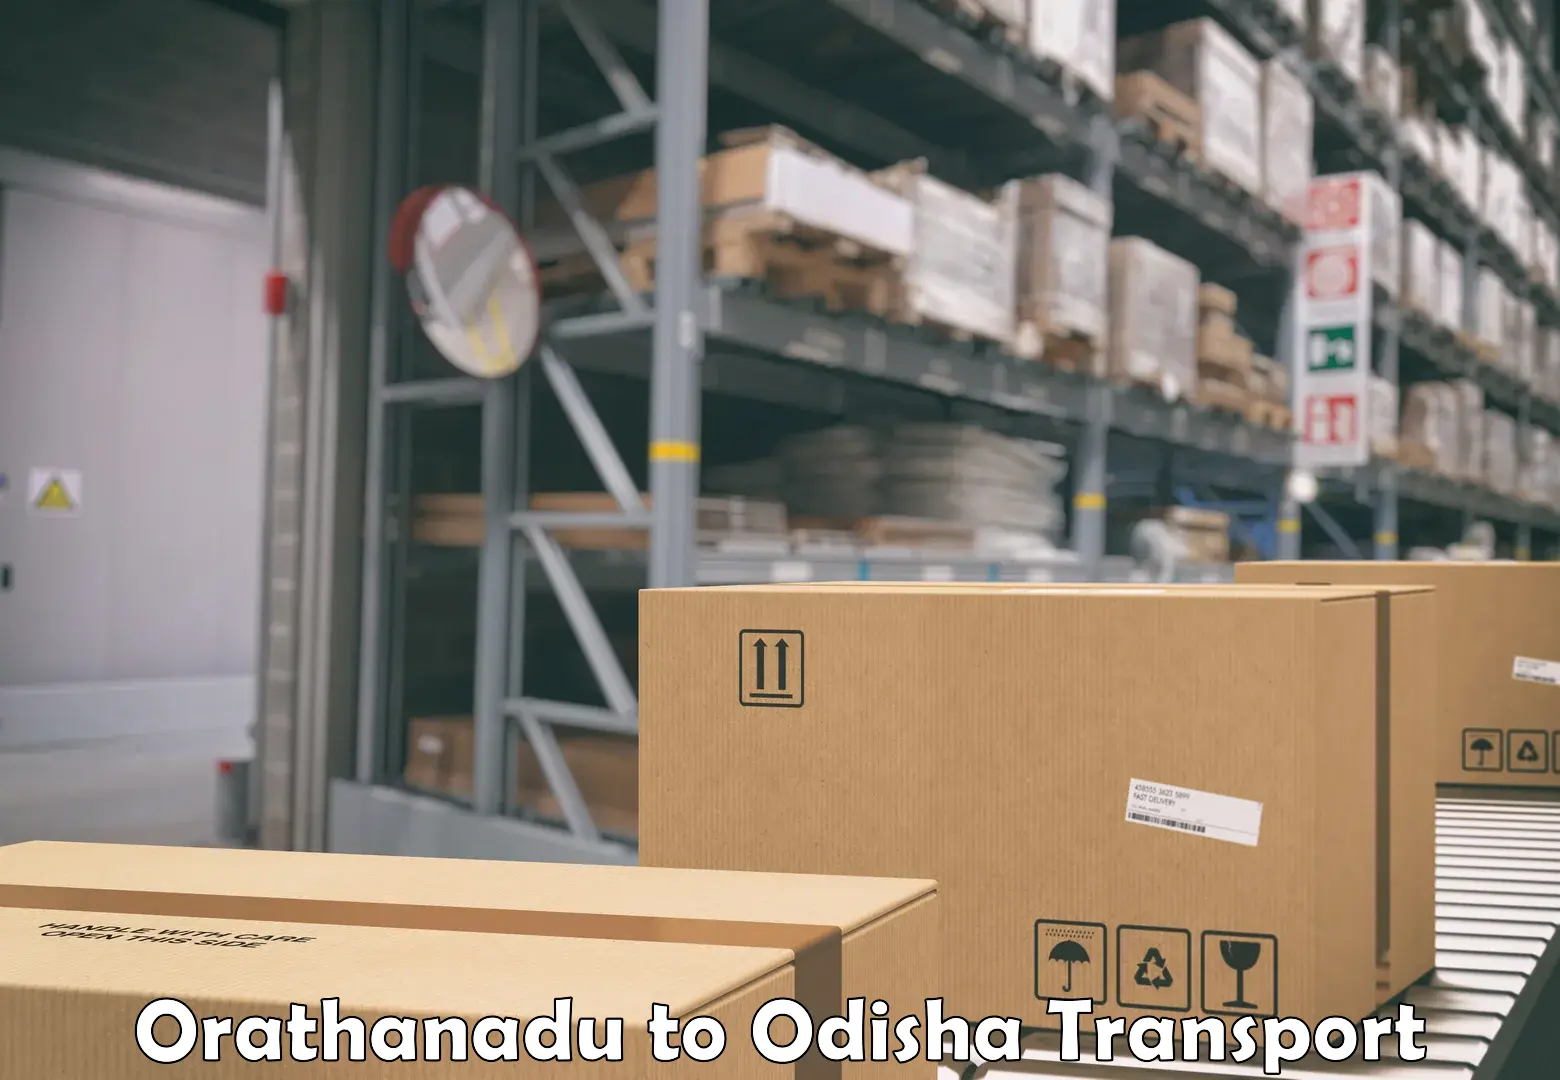 International cargo transportation services Orathanadu to Daspalla